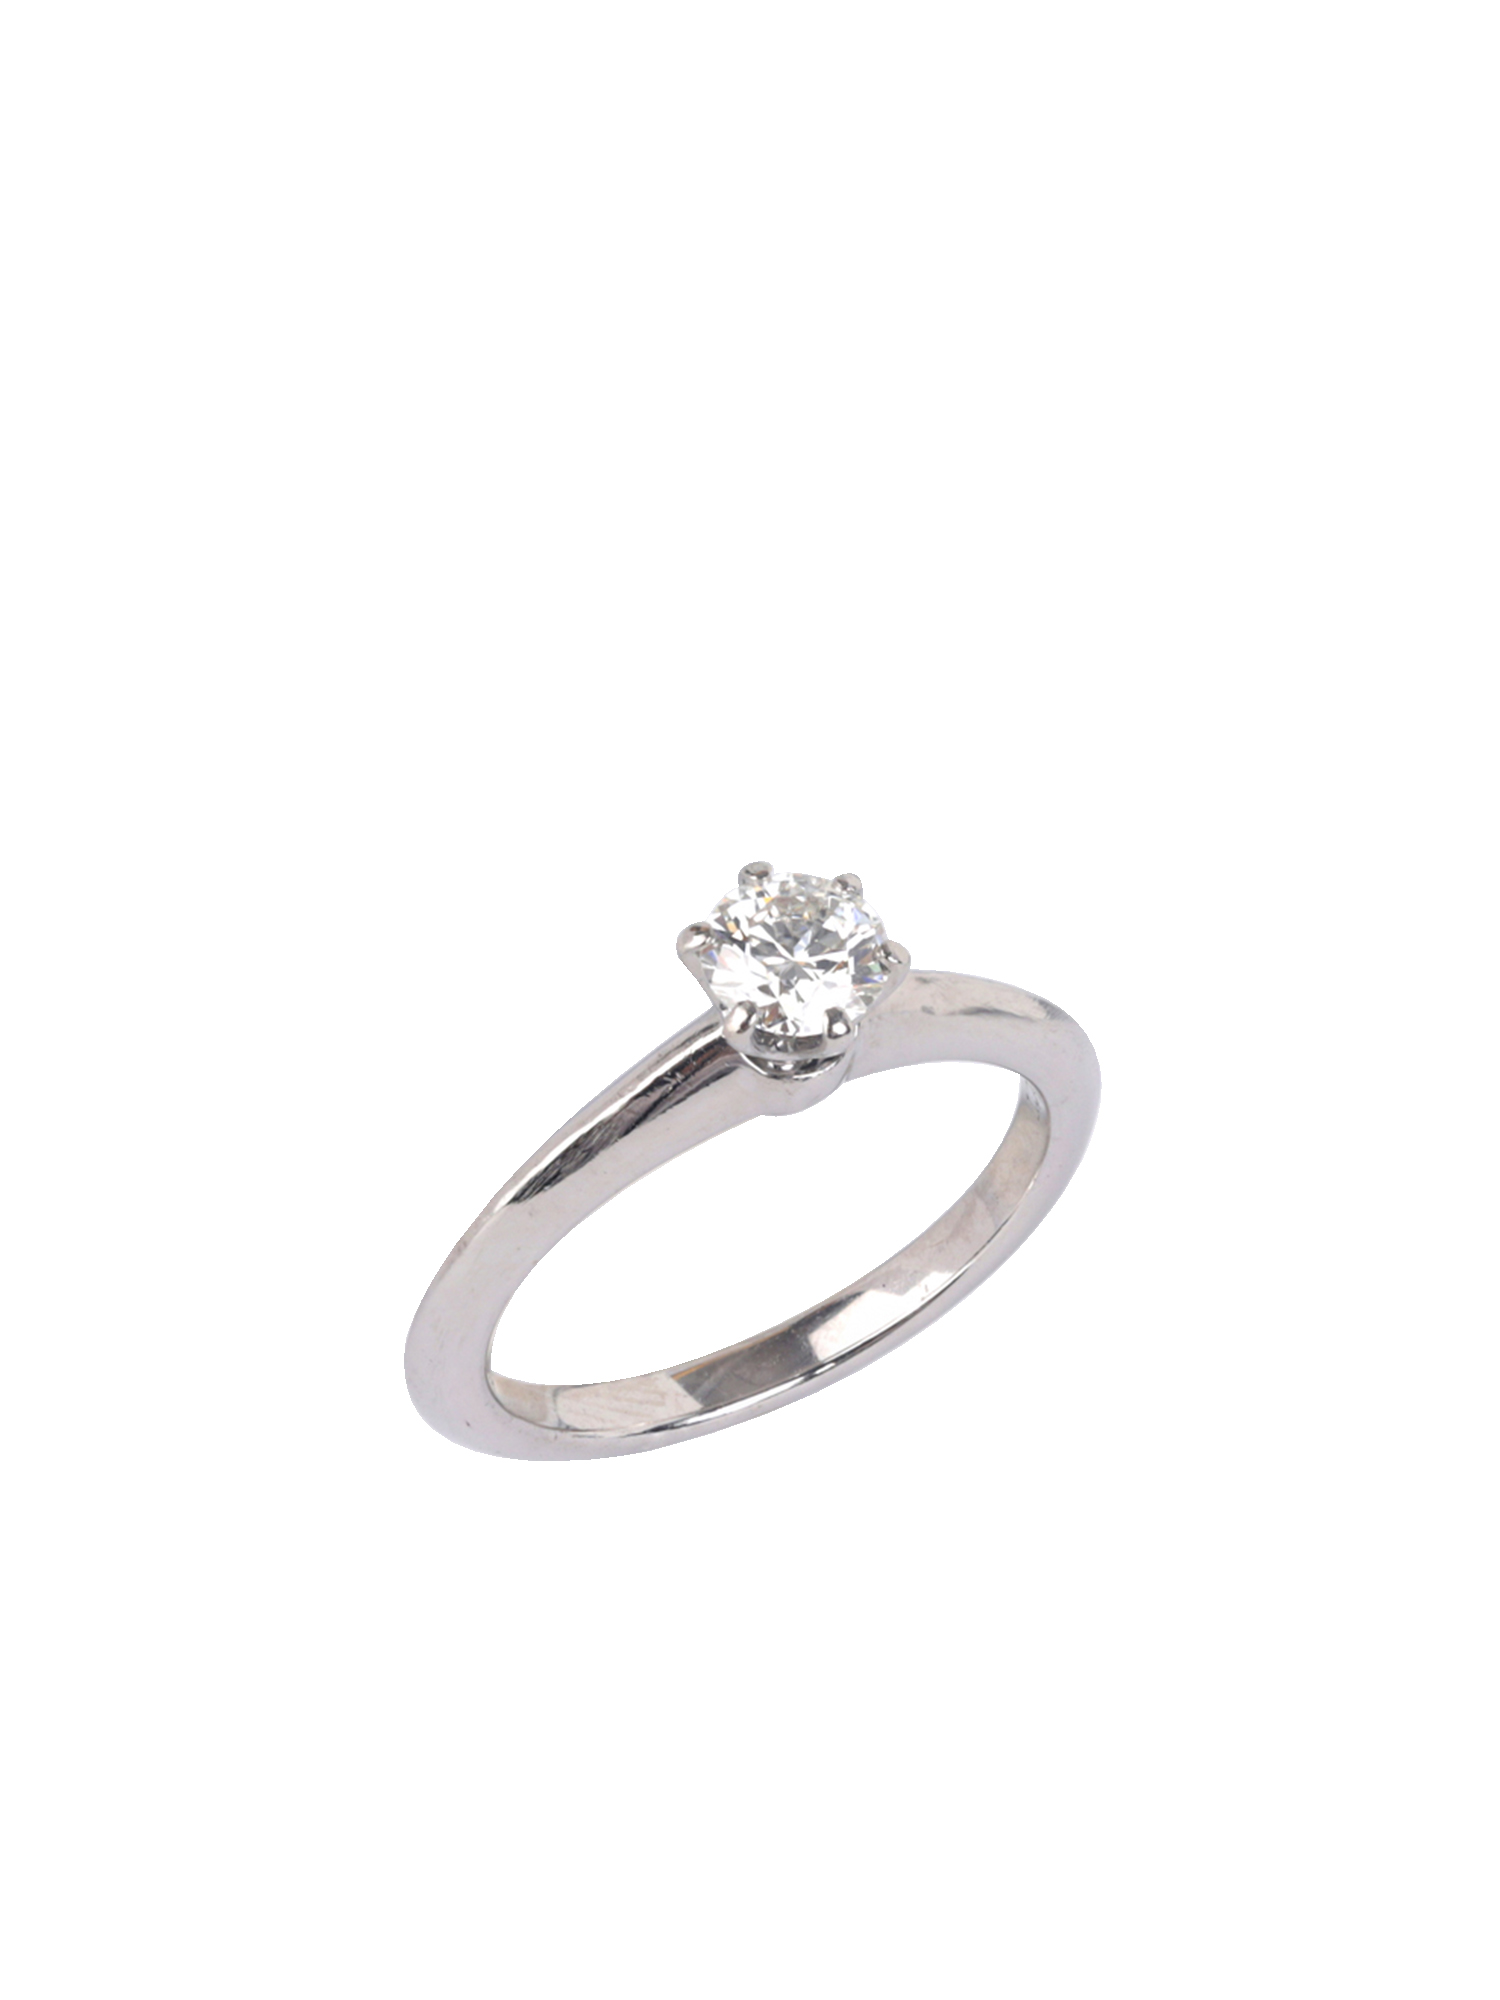 https://image.katexoxo.com/uploads/images/kxo_20230220144340qk2hk. The Tiffany Setting Engagement Ring in Platinum 950 Size 49Artboard 1